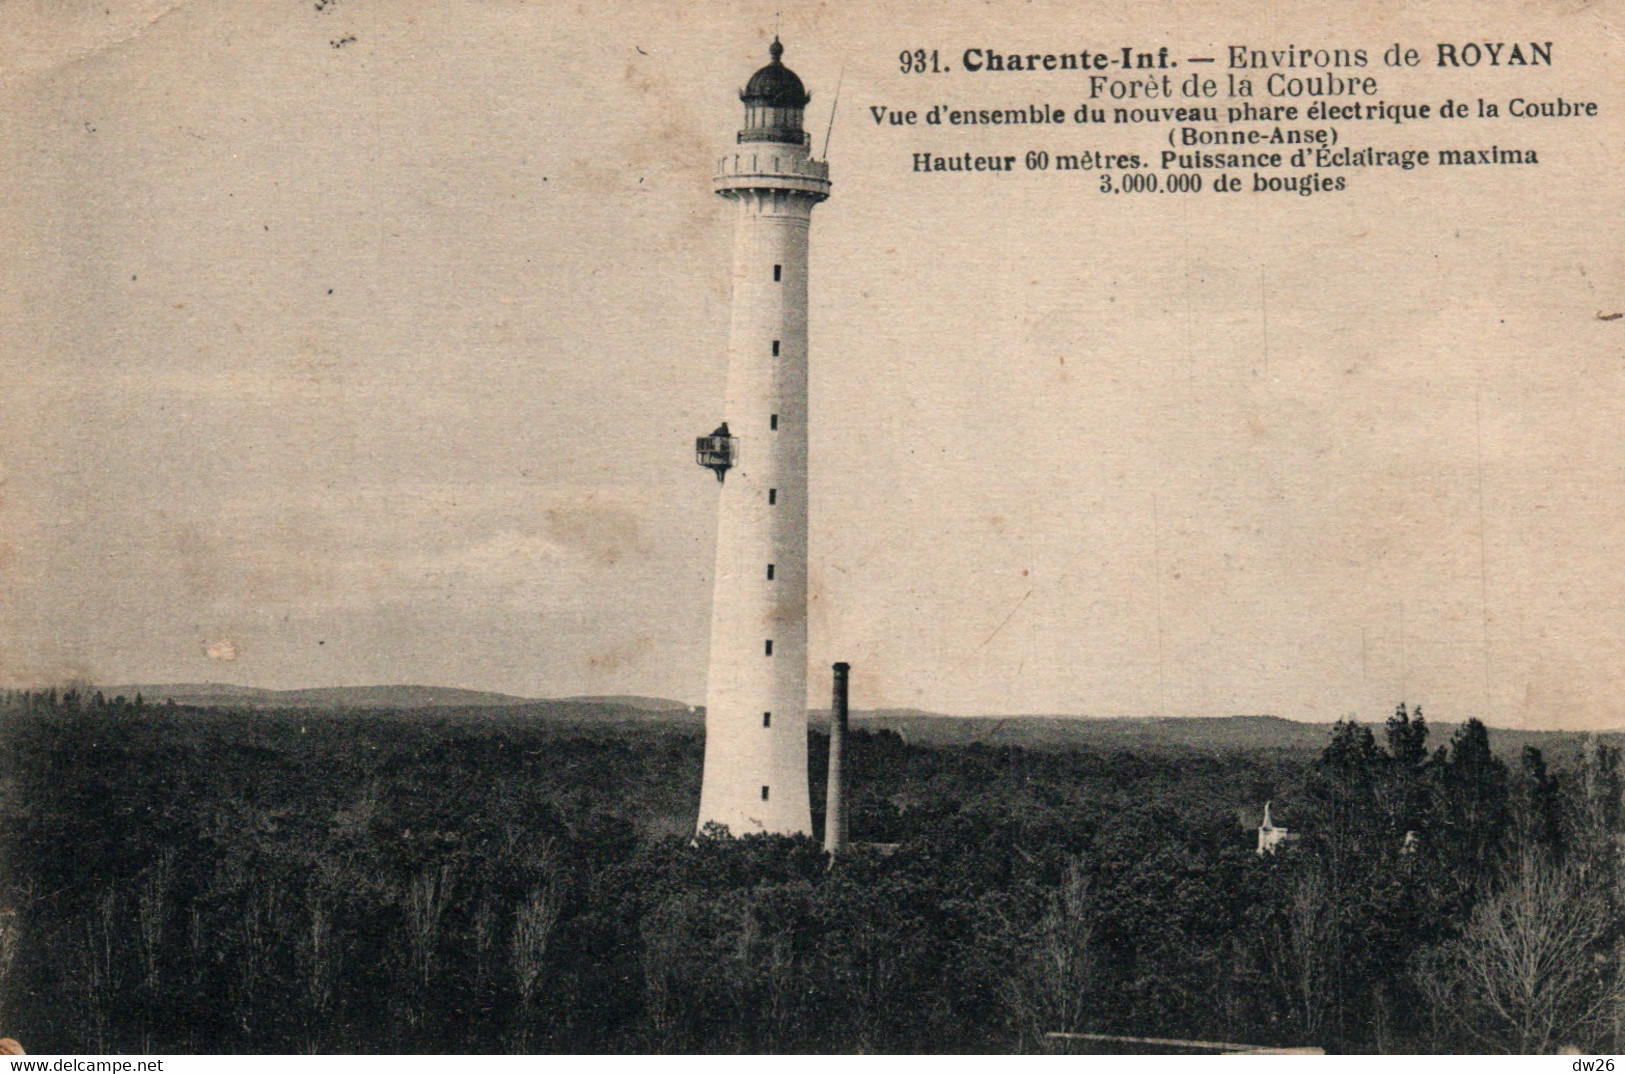 Environs De Royan (Charente-Inférieure) Forêt Et Nouveau Phare électrique De La Coubre - Carte Braun N° 931 - Lighthouses